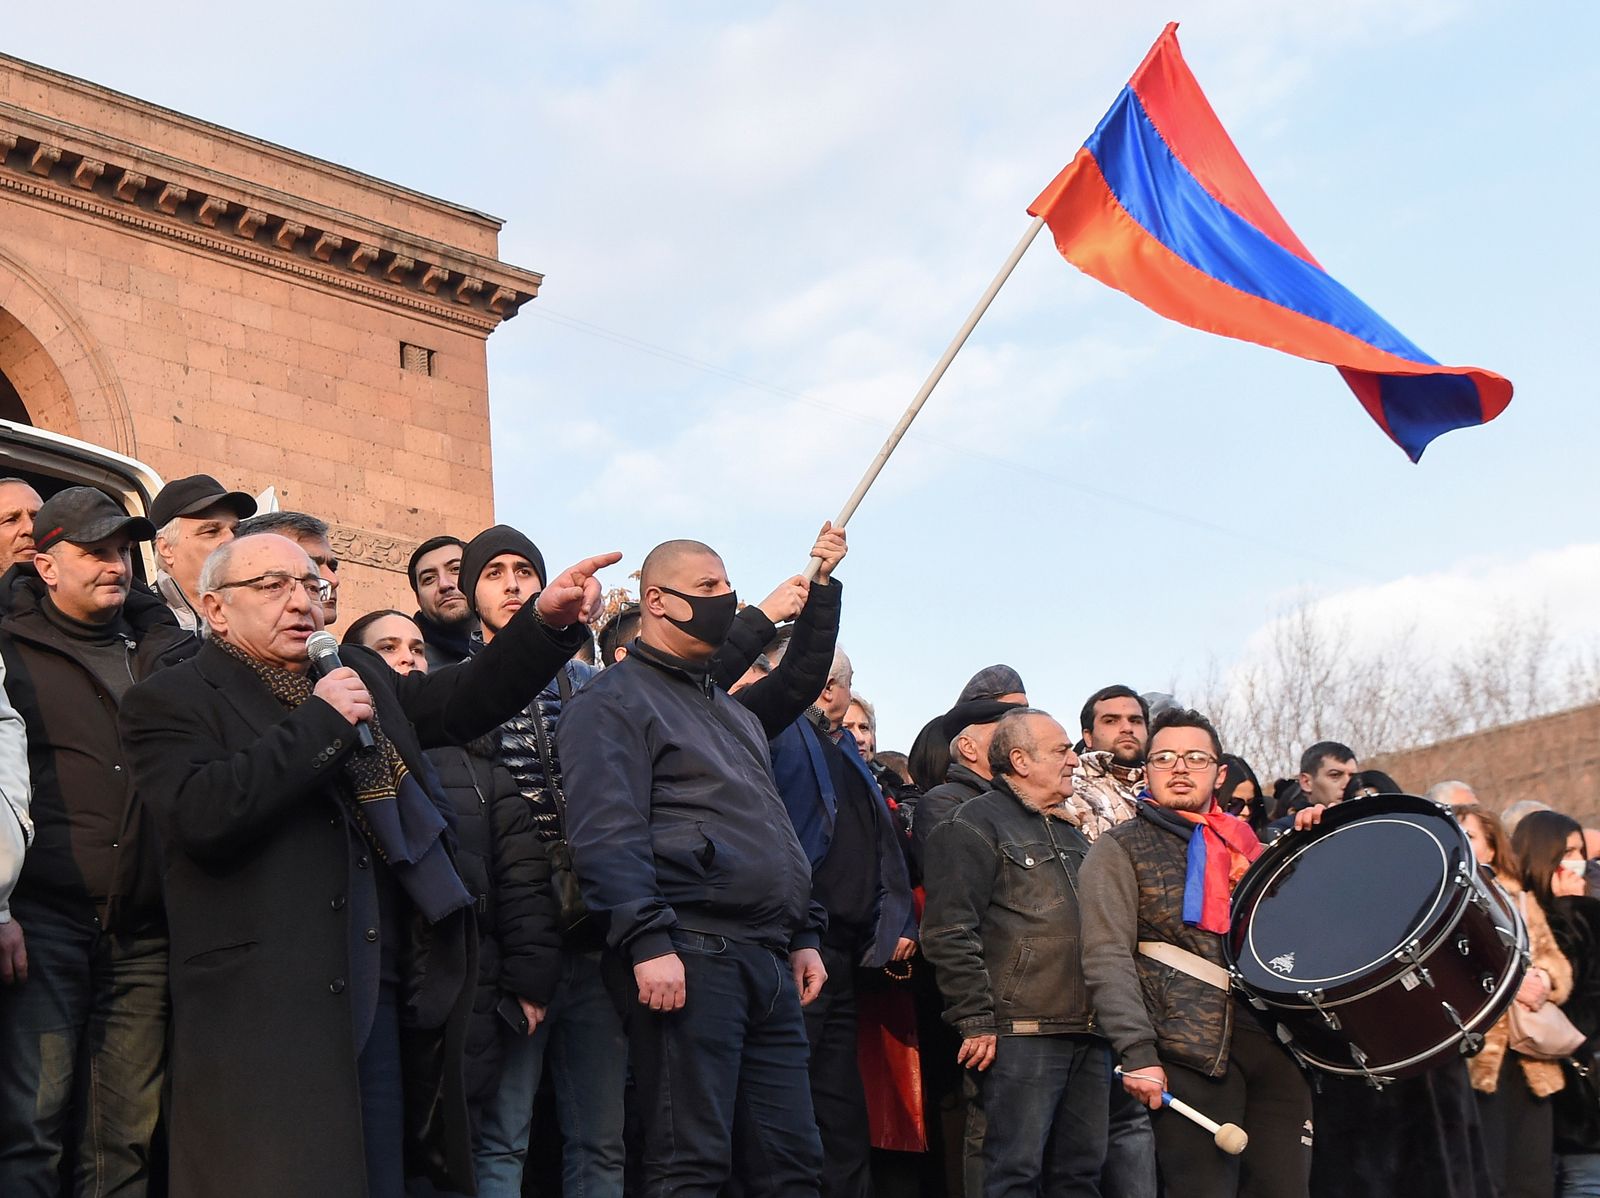 زعيم المعارضة الأرمينية فازغين مانوكيان يتحدث خلال تظاهرة في يريفان - 25 فبراير 2021 - REUTERS